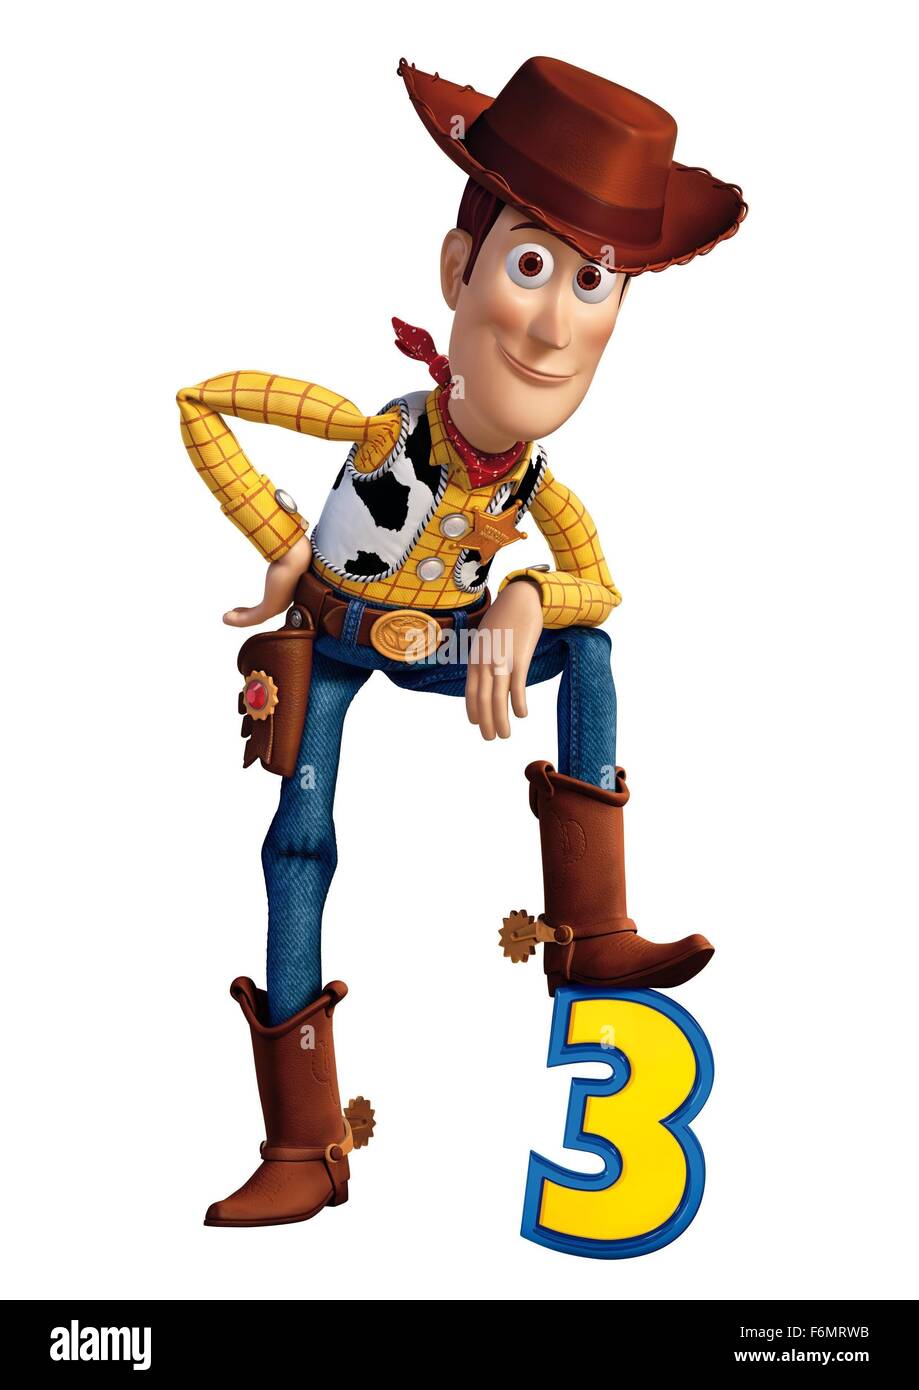 Data di rilascio: giugno 18, 2010 il titolo del filmato: Toy Story 3 STUDIO: Disney Pixar direttore: Lee Unkrich trama: Woody, Buzz e il resto di loro toy-box amici sono oggetto di dumping in un giorno-centro di cura dopo il loro proprietario, Andy, parta per il college nella foto: Woody (credito Immagine: c Disney Pixar/Entertainment Immagini) Foto Stock